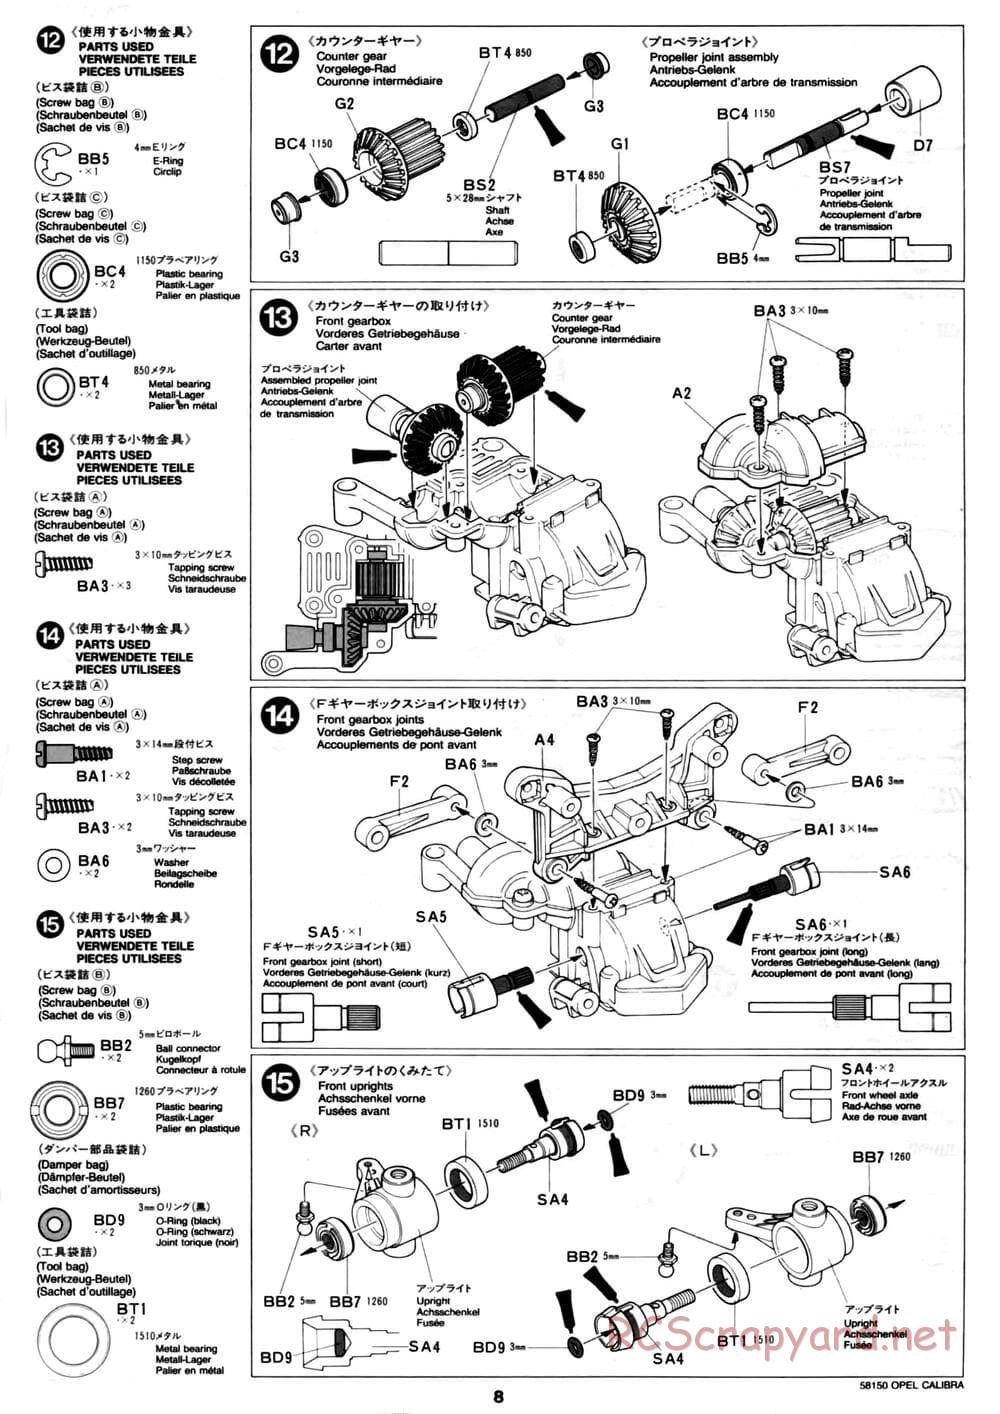 Tamiya - Opel Calibra V6 DTM - TA-02 Chassis - Manual - Page 8